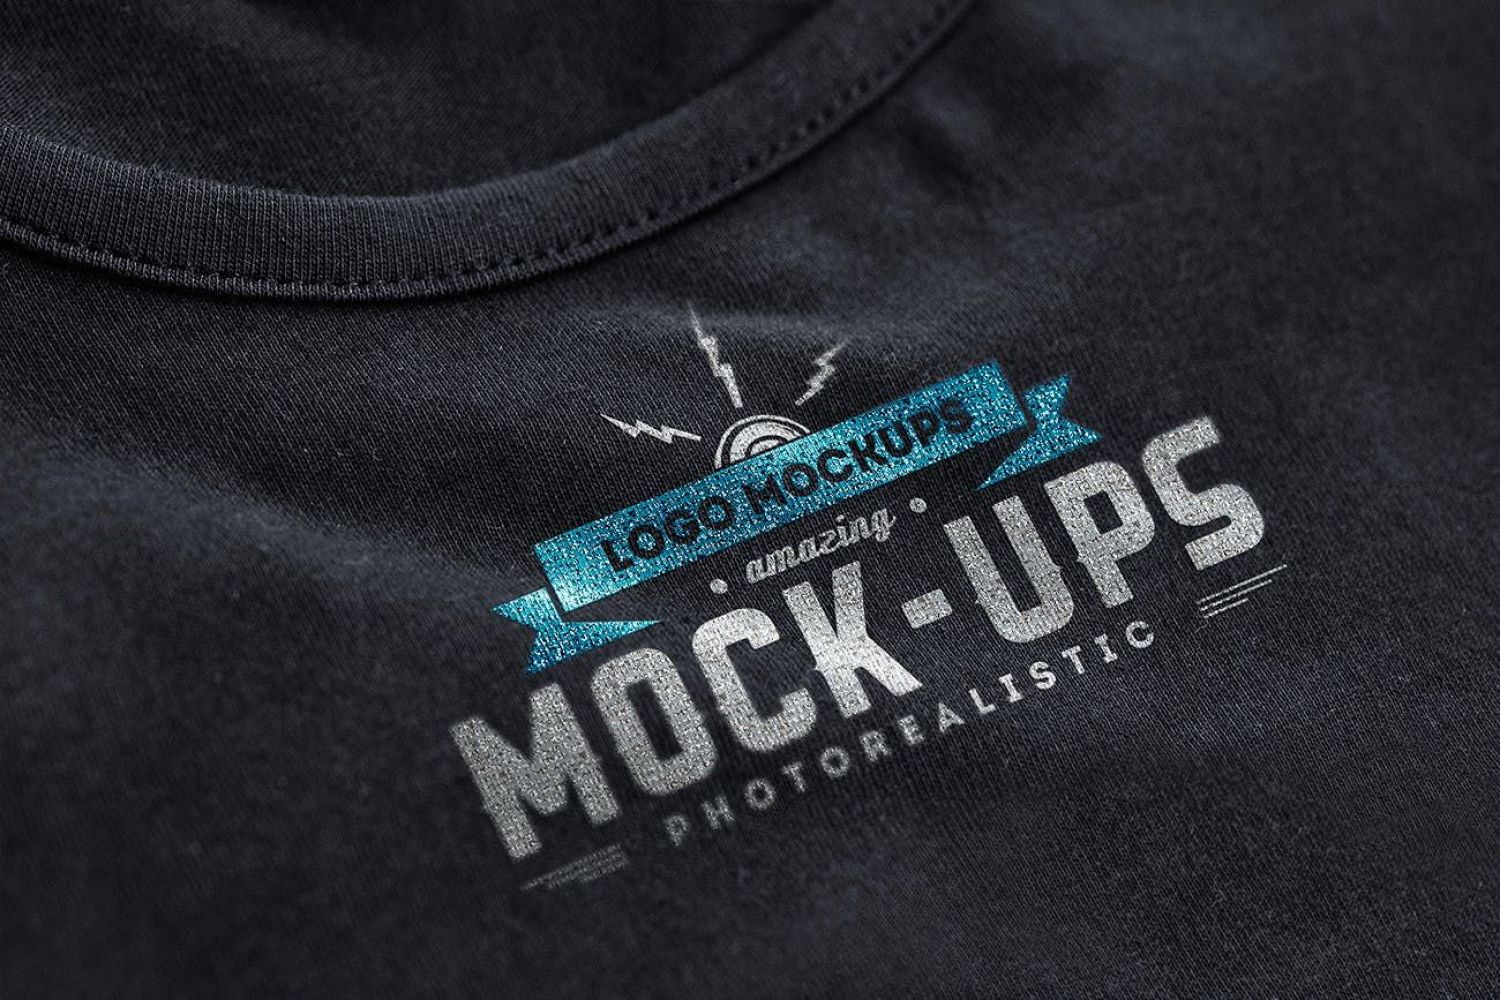 Logo样机 Vol.1 Logo Mock-Ups Vol.1插图2